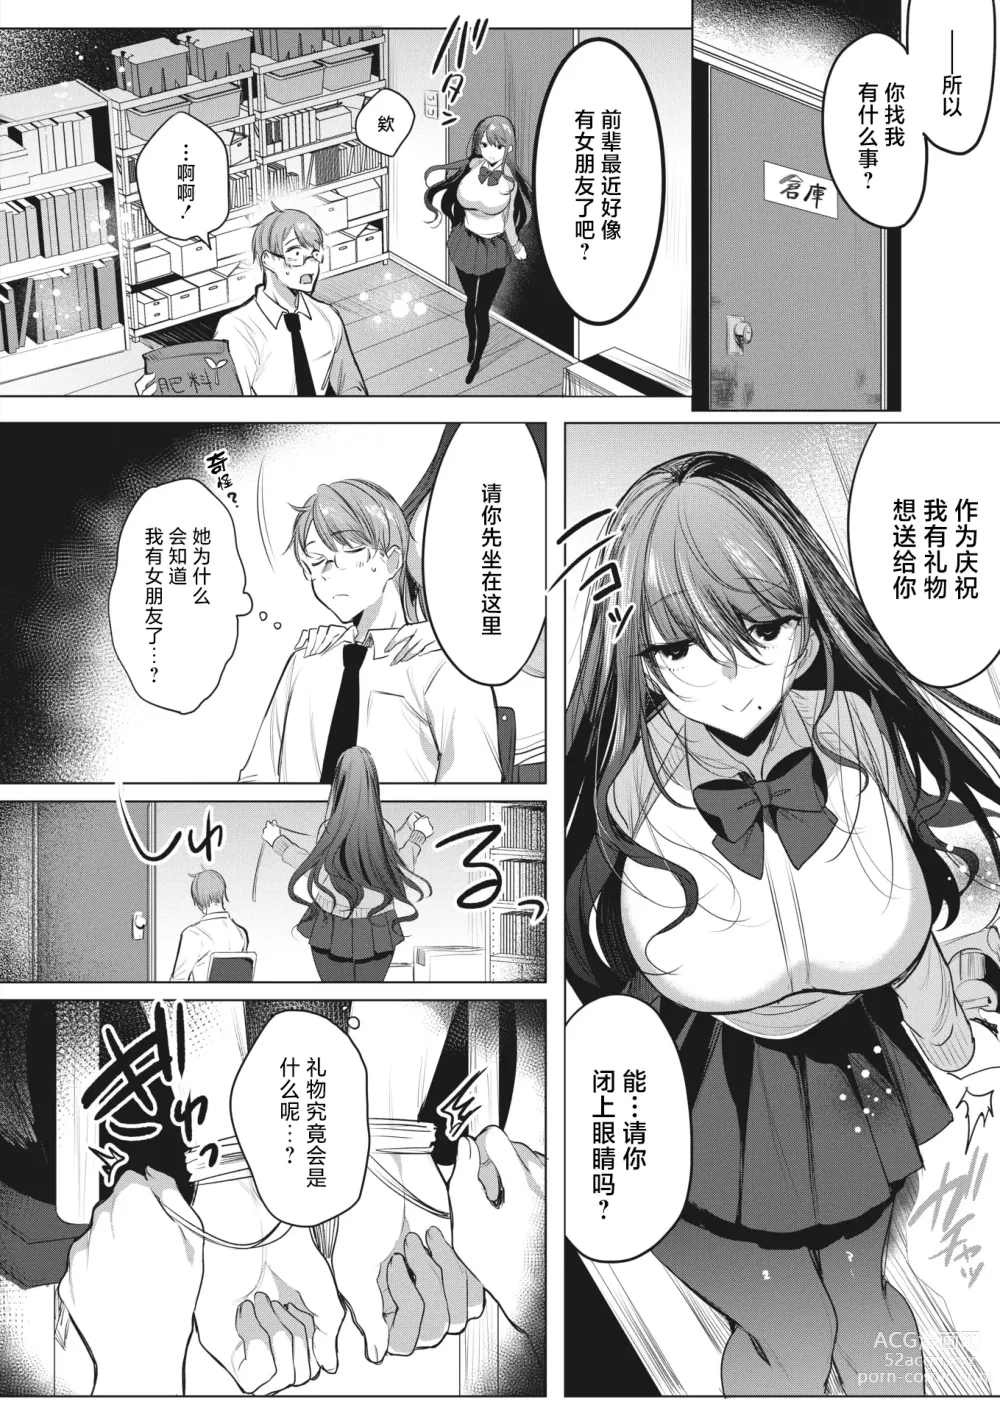 Page 4 of manga Watashi no Mono ni Natte